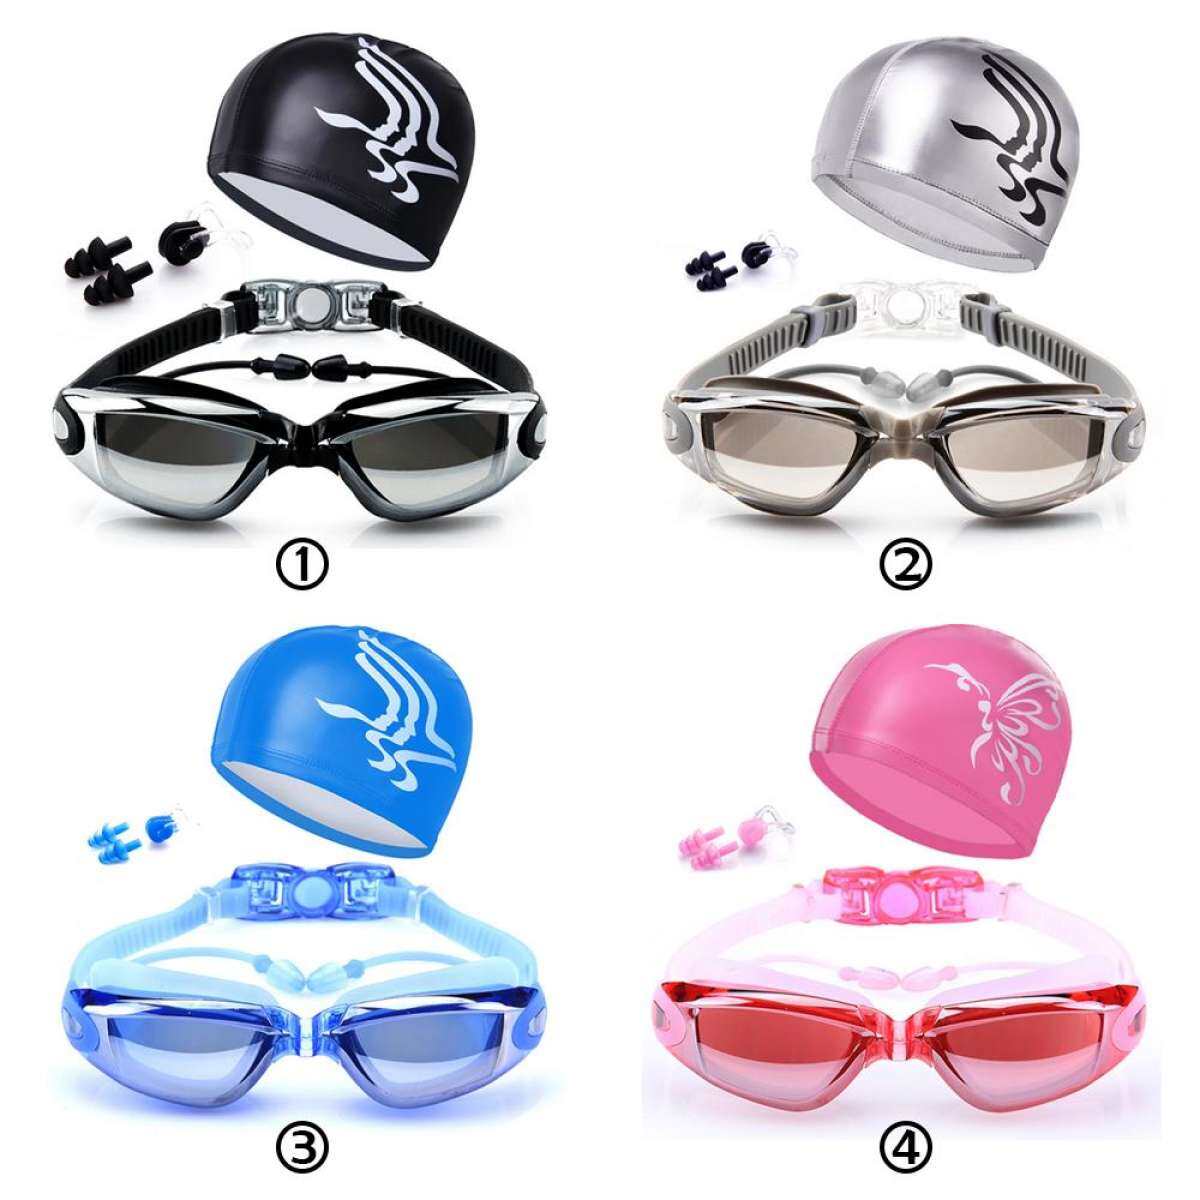 ภาพประกอบคำอธิบาย แว่นตาว่ายน้ำ ชุดหมวกว่ายน้ำ + แว่นตาว่ายน้ำ พร้อมคลิปหนีบจมูกหู + หมวก กันน้ำ UV Shatter – Proof